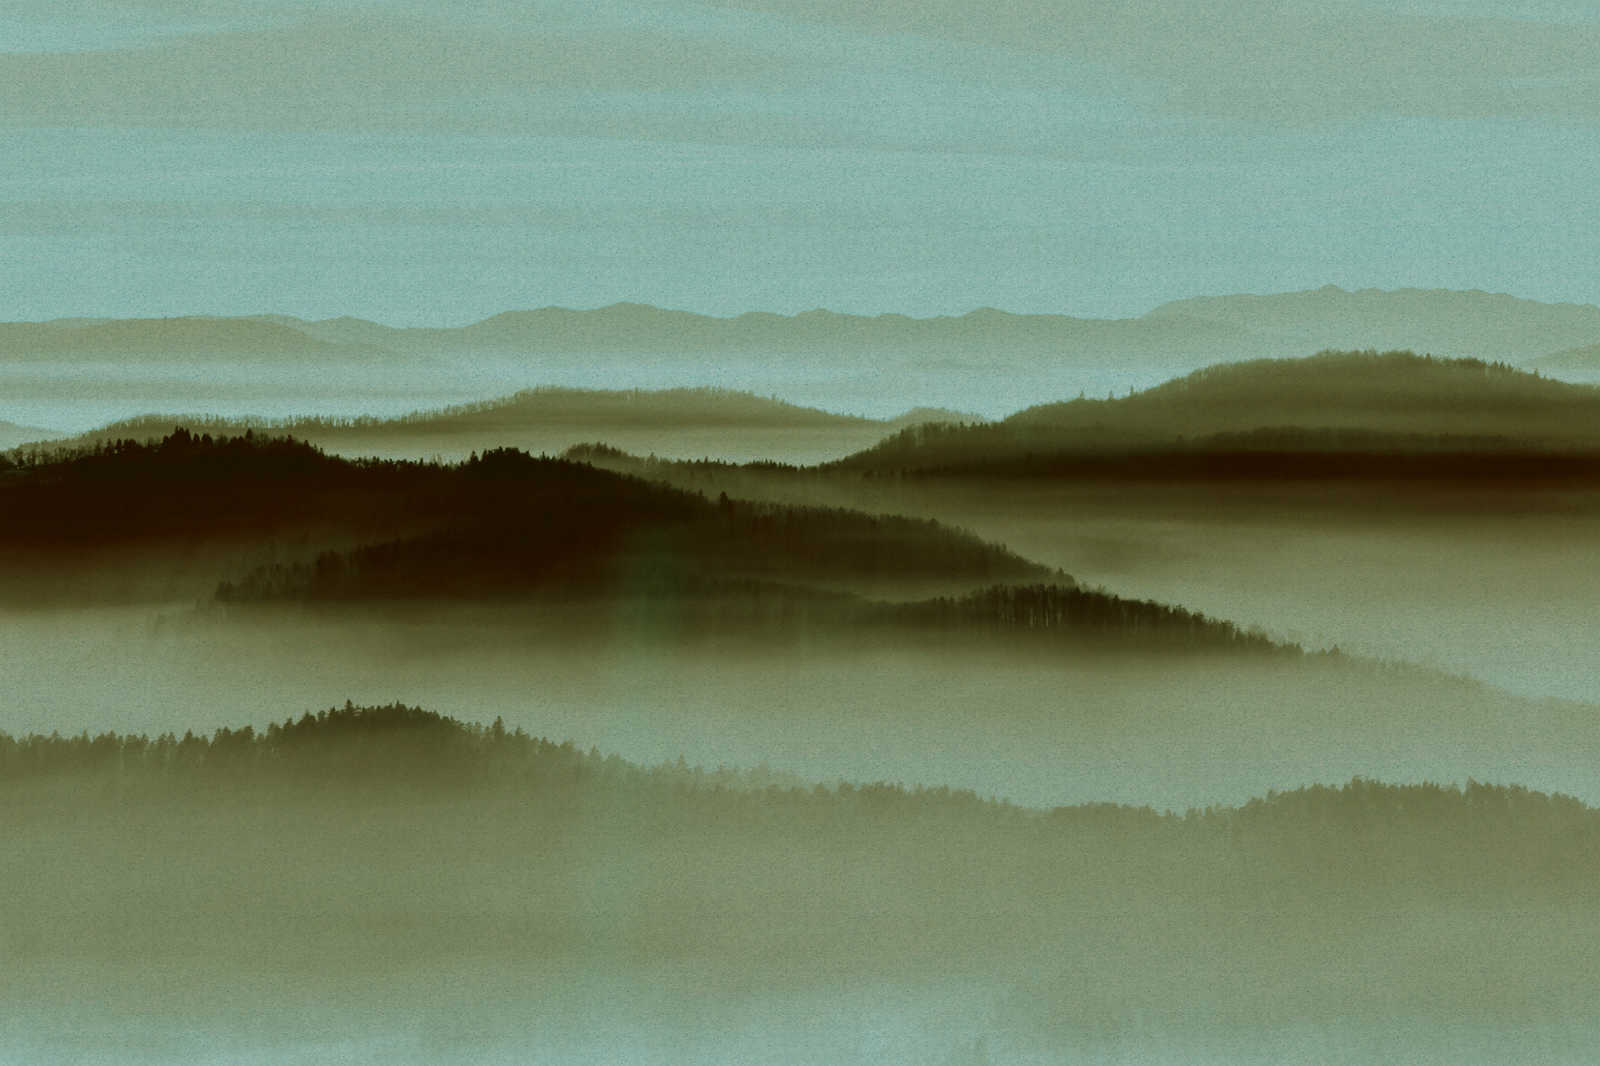             Horizon 2 - À structure de toile en carton avec paysage de brume, nature Sky Line - 0,90 m x 0,60 m
        